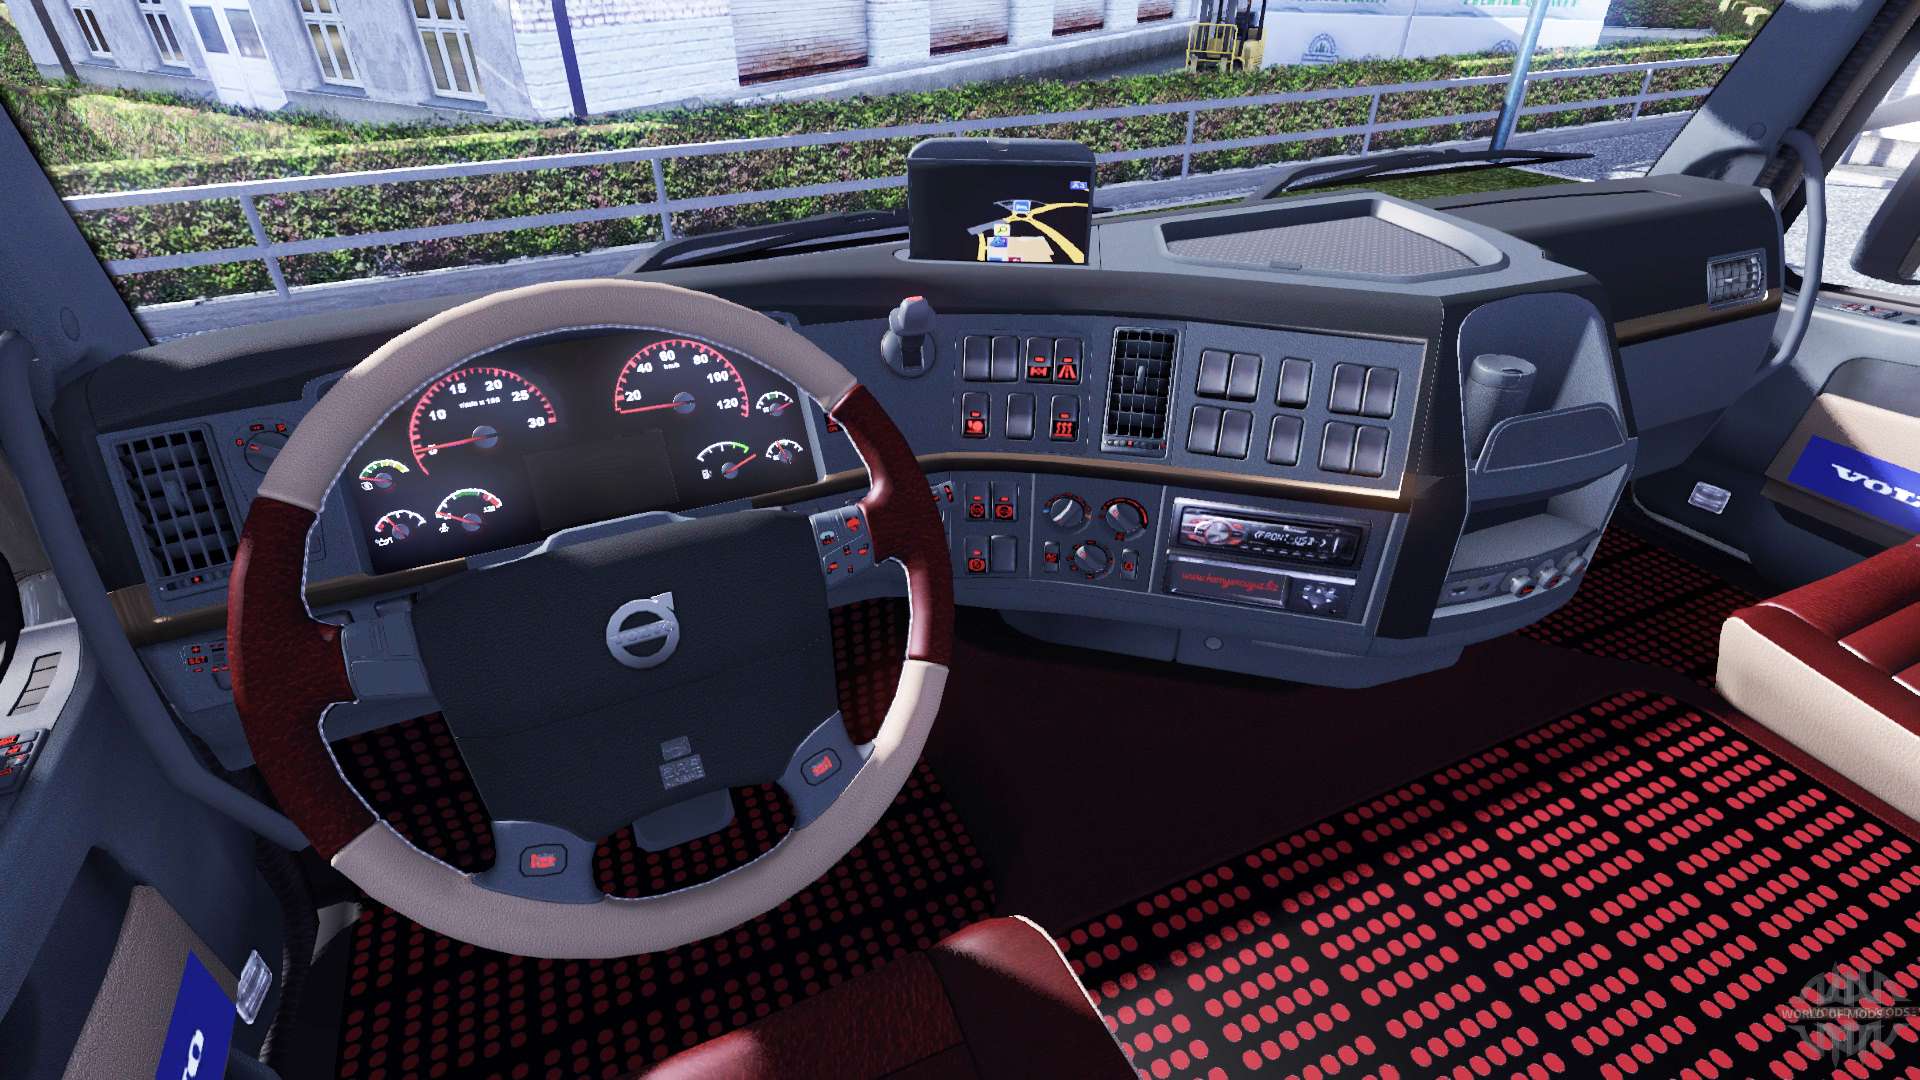 euro truck simulator 2 1.31.2.1 product key